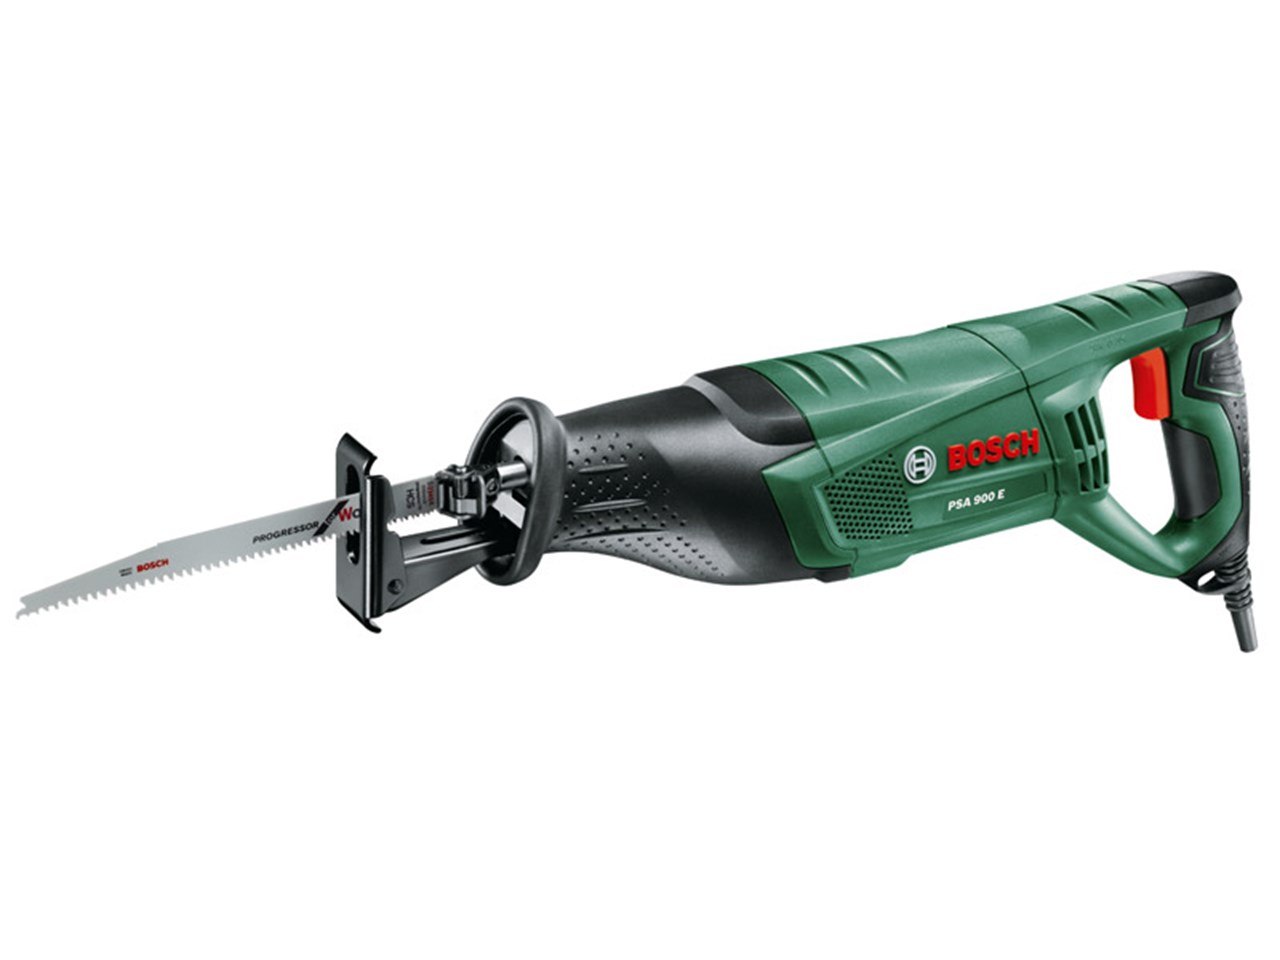 Bosch Green Psa 900 E 240v Reciprocating Sabre Saw 900w